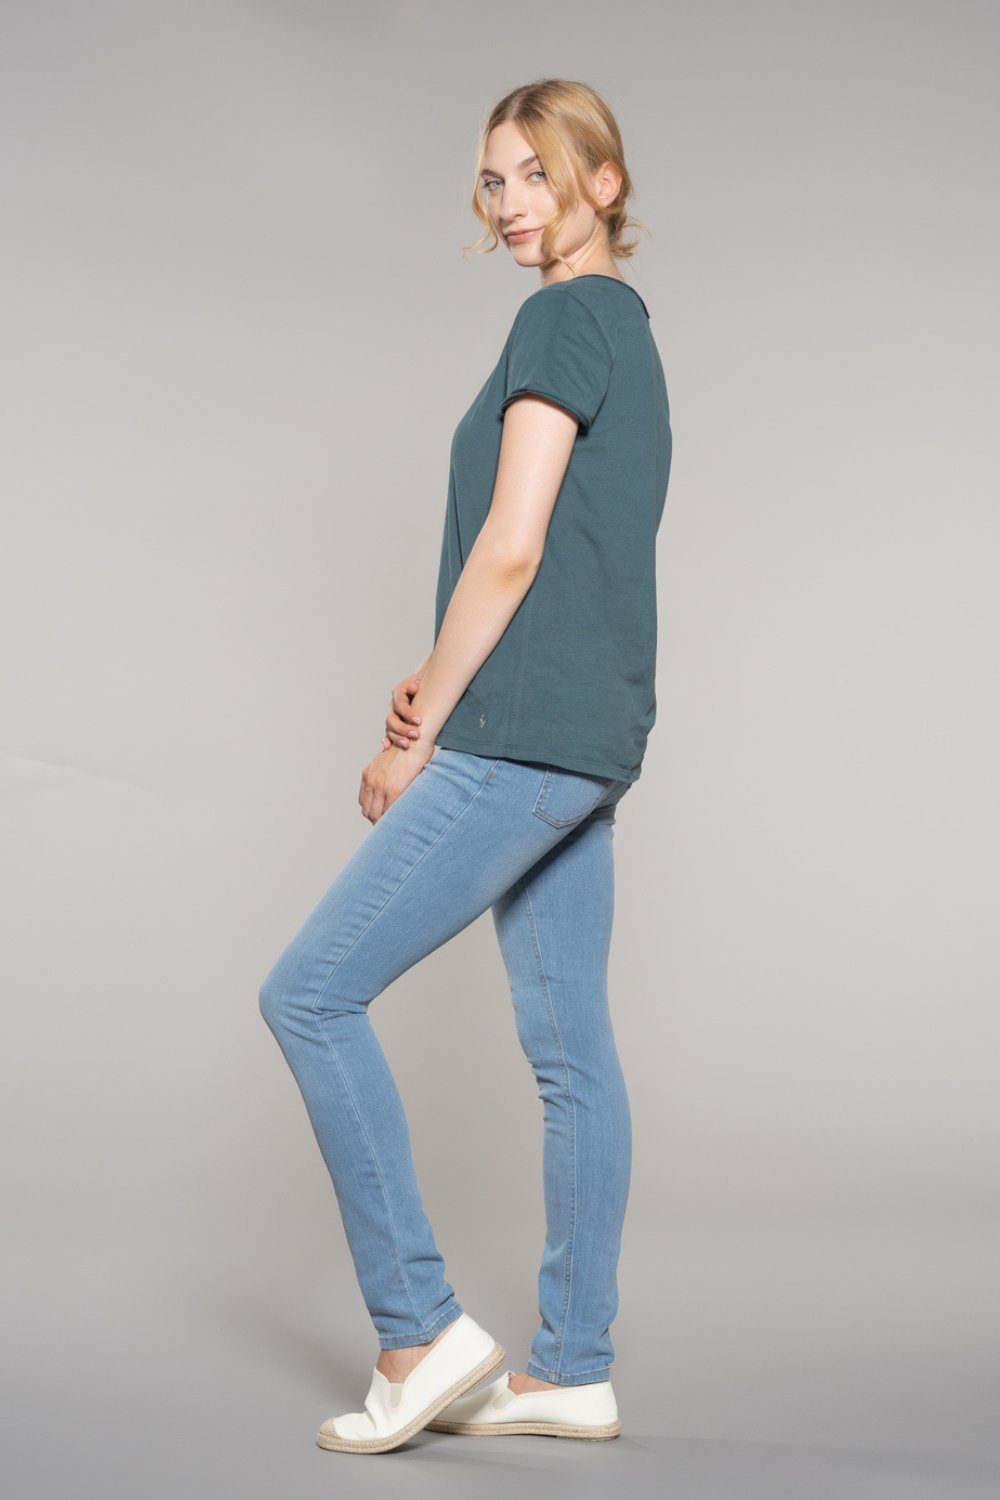 Feuervogl High-waist-Jeans fv-Han:na, Hyperflex Waist, Waist Damenjeans High Blue Skinny, High 5-Pocket-Style, Denim, Summer